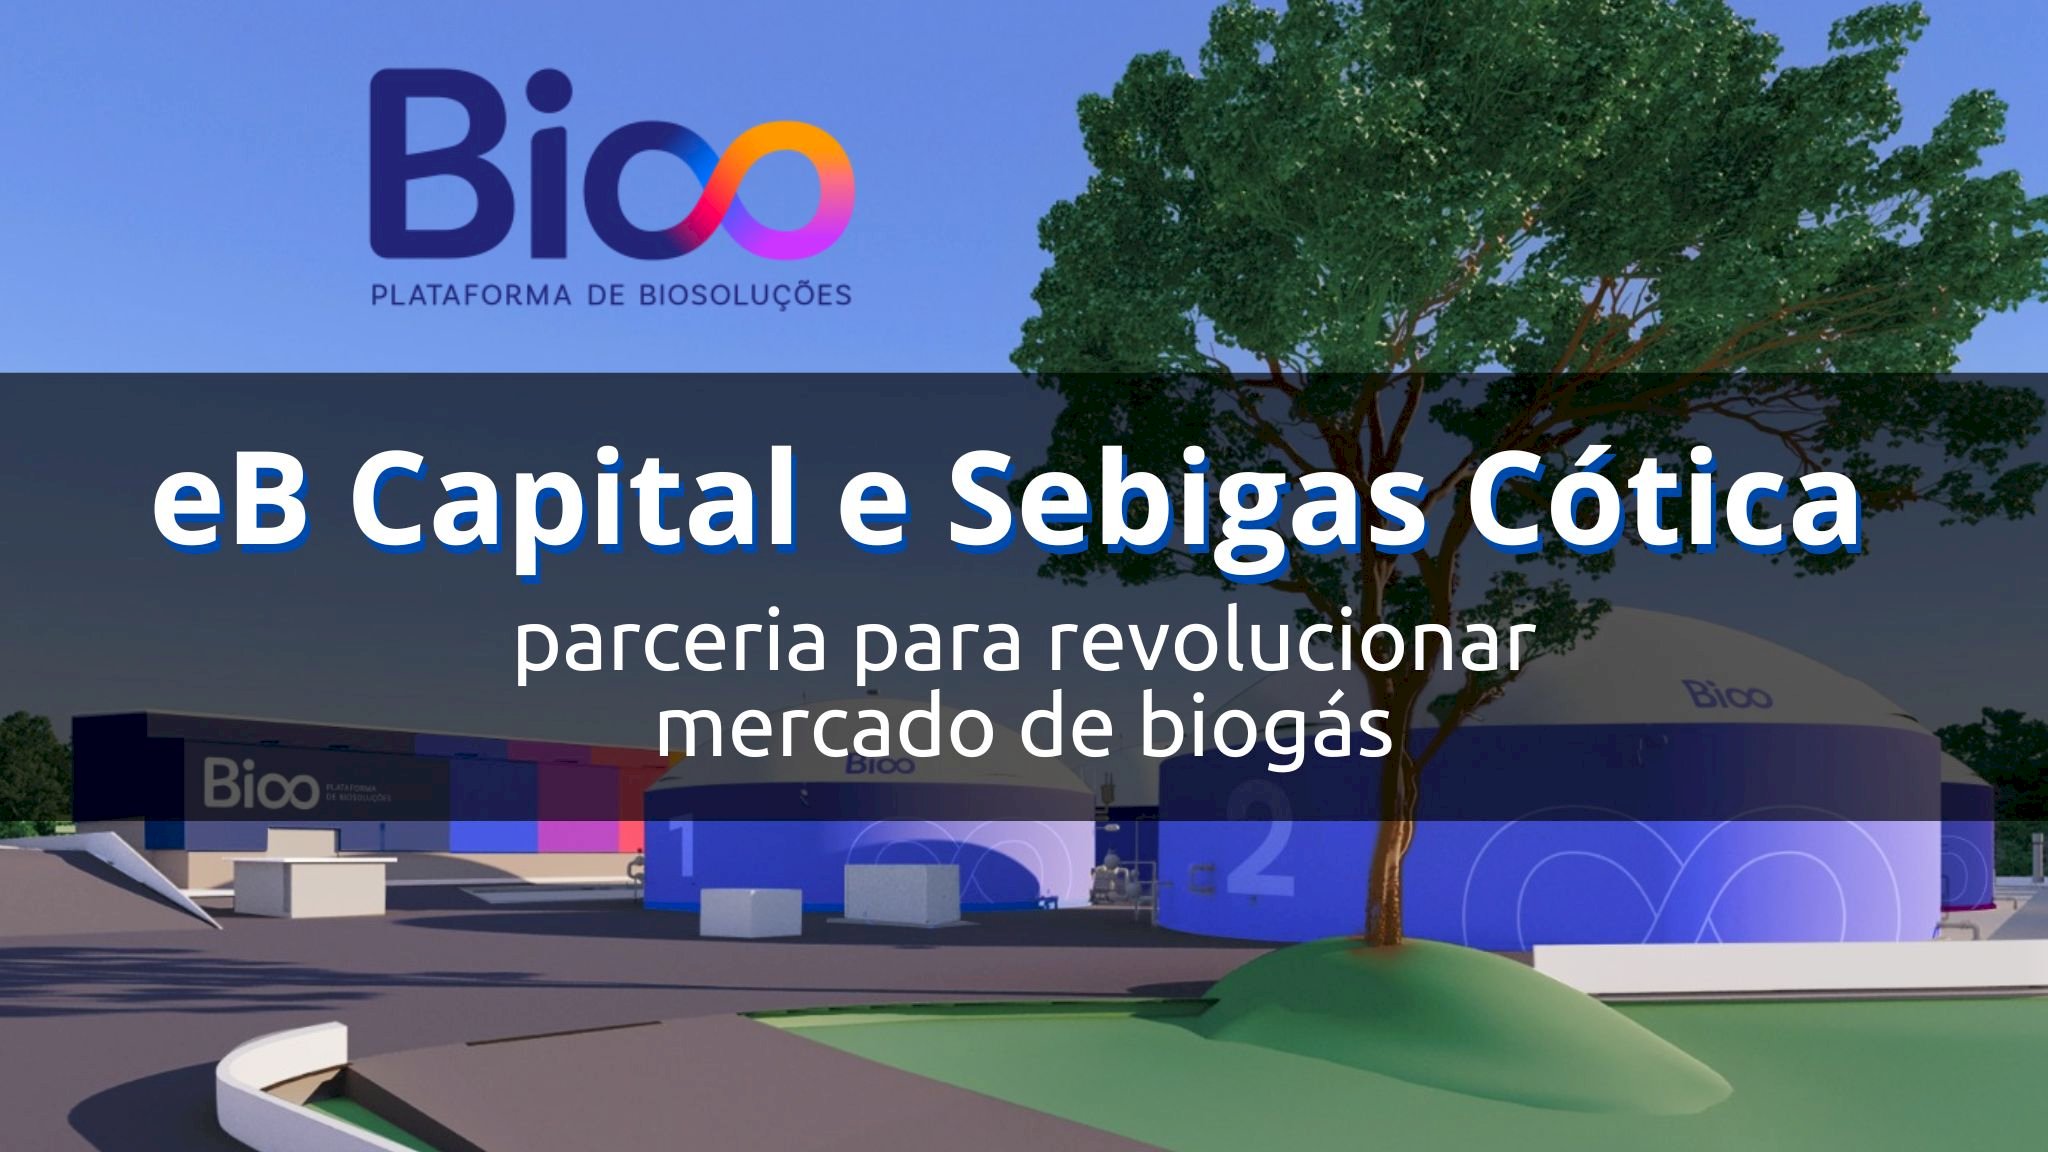 eB Capital e Sebigas Cótica firmam parceria para revolucionar mercado de biogás no país